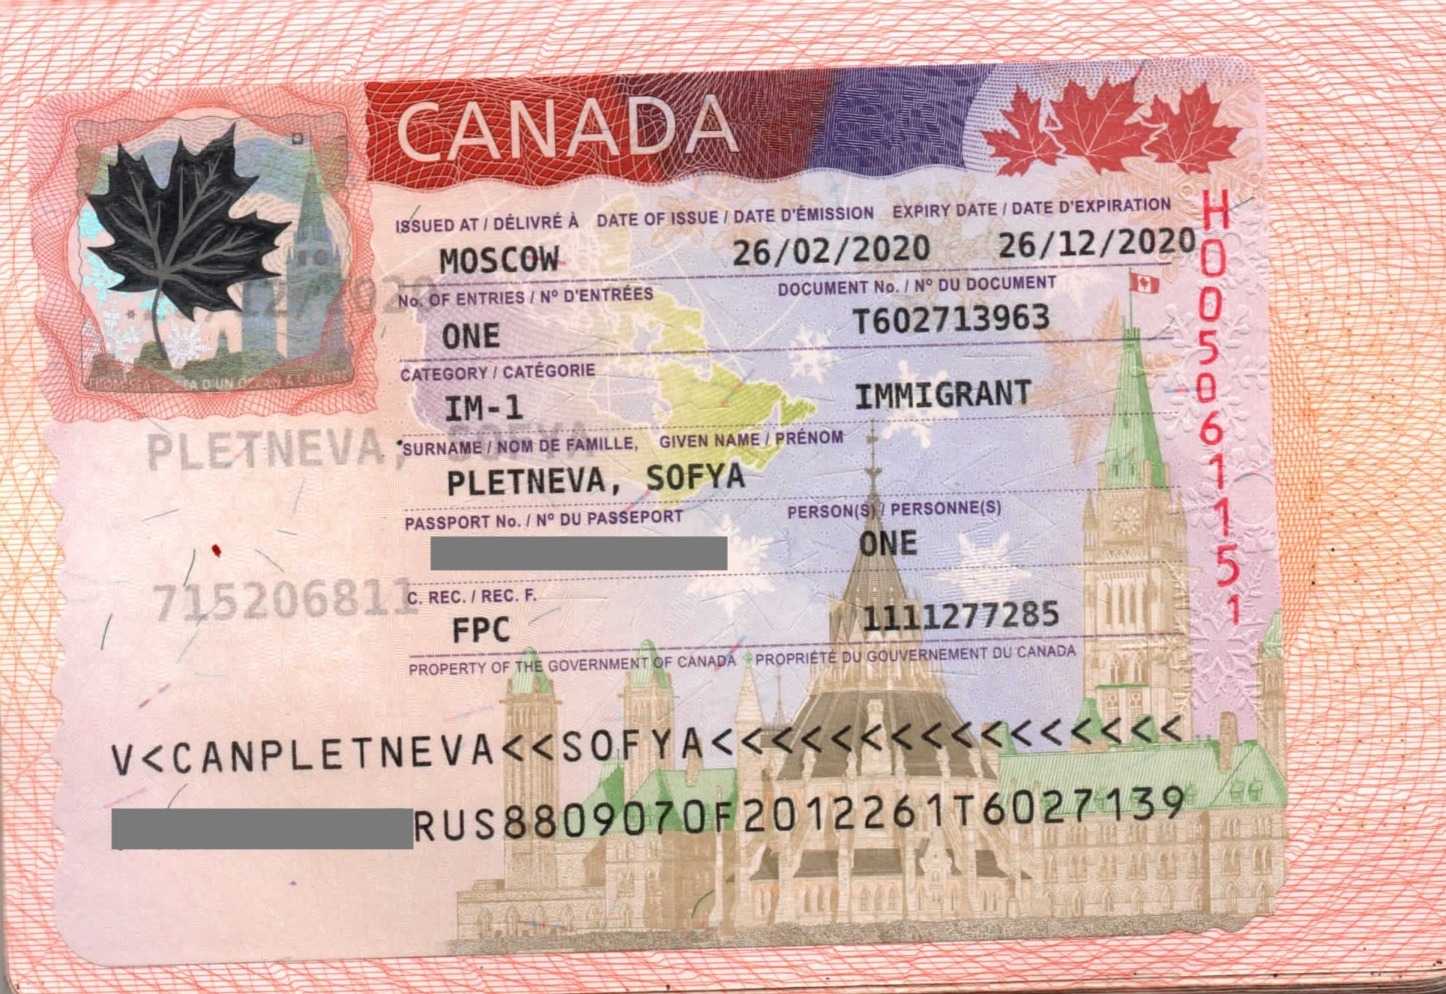 Express entry canada 2021: калькулятор и проходные баллы экспресс энтри для иммиграции в канаду